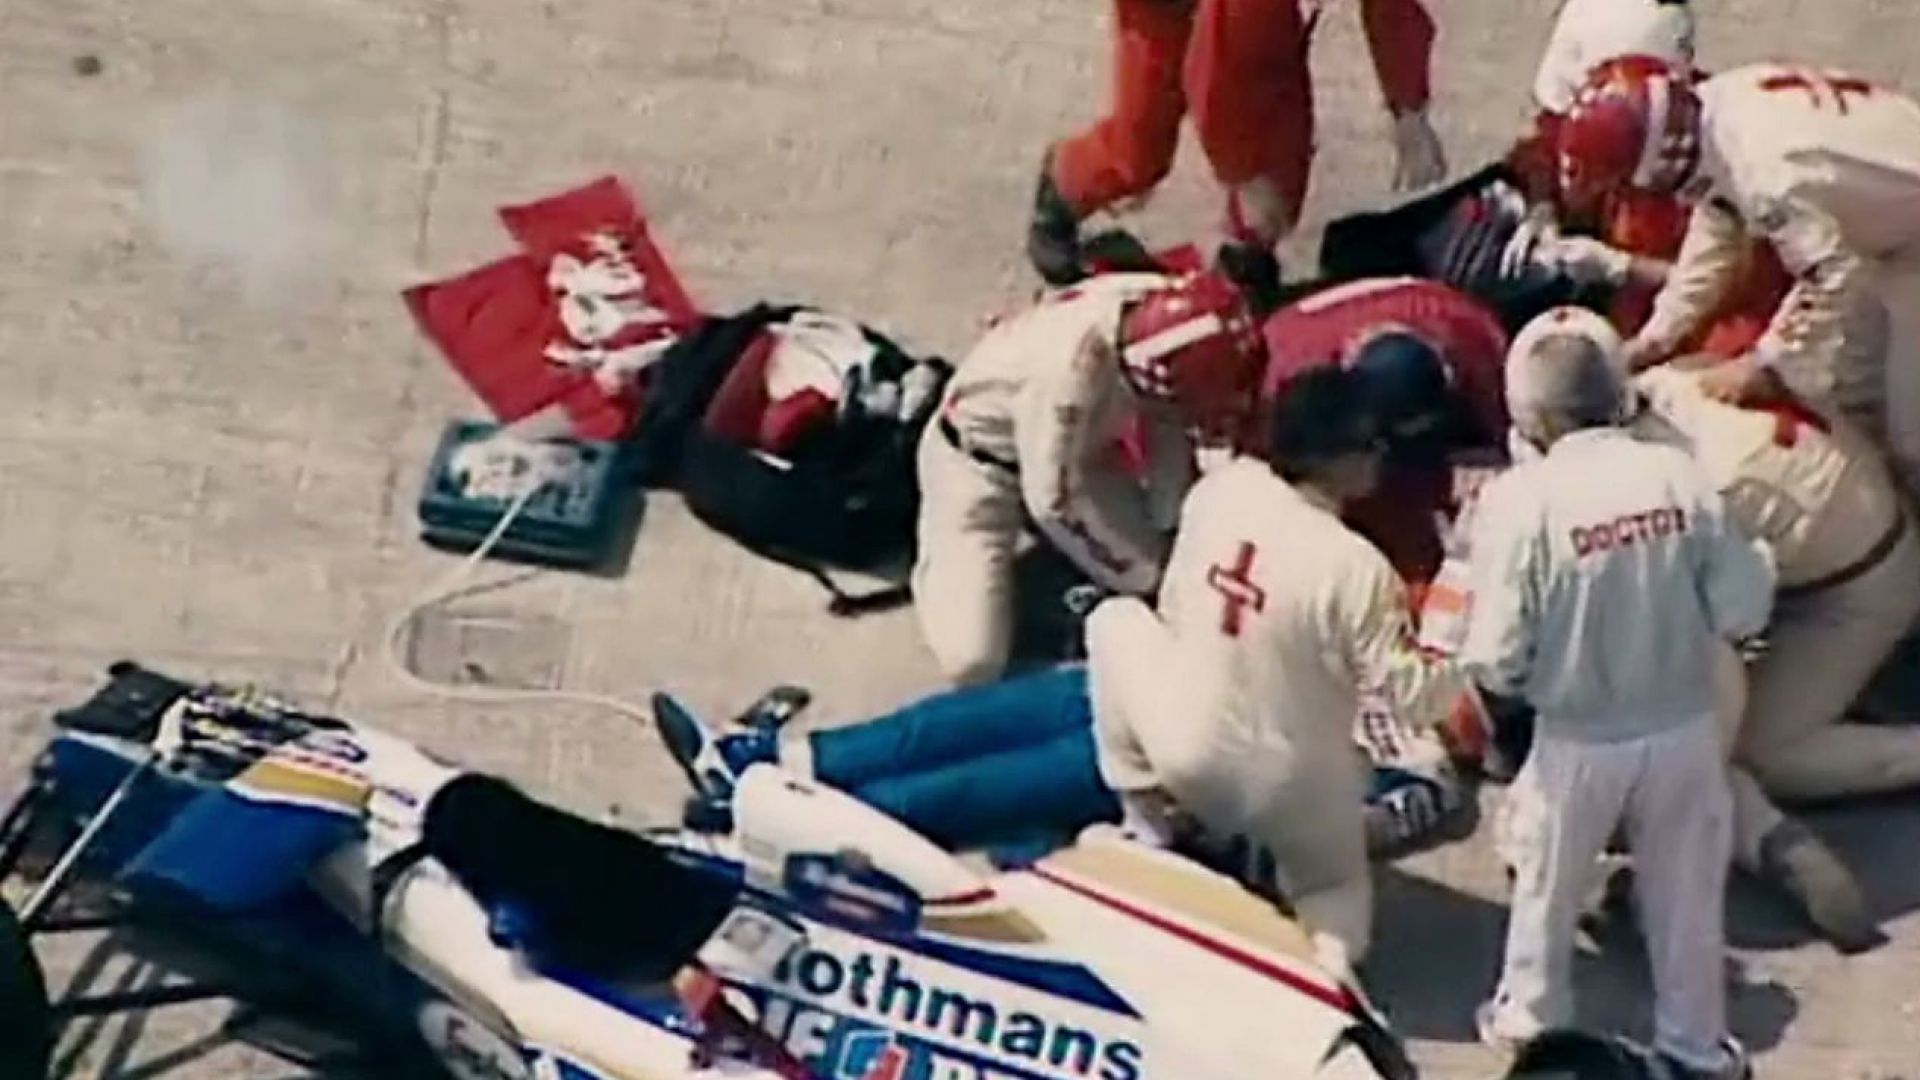 Ayrton Senna crash May 1st, 1994